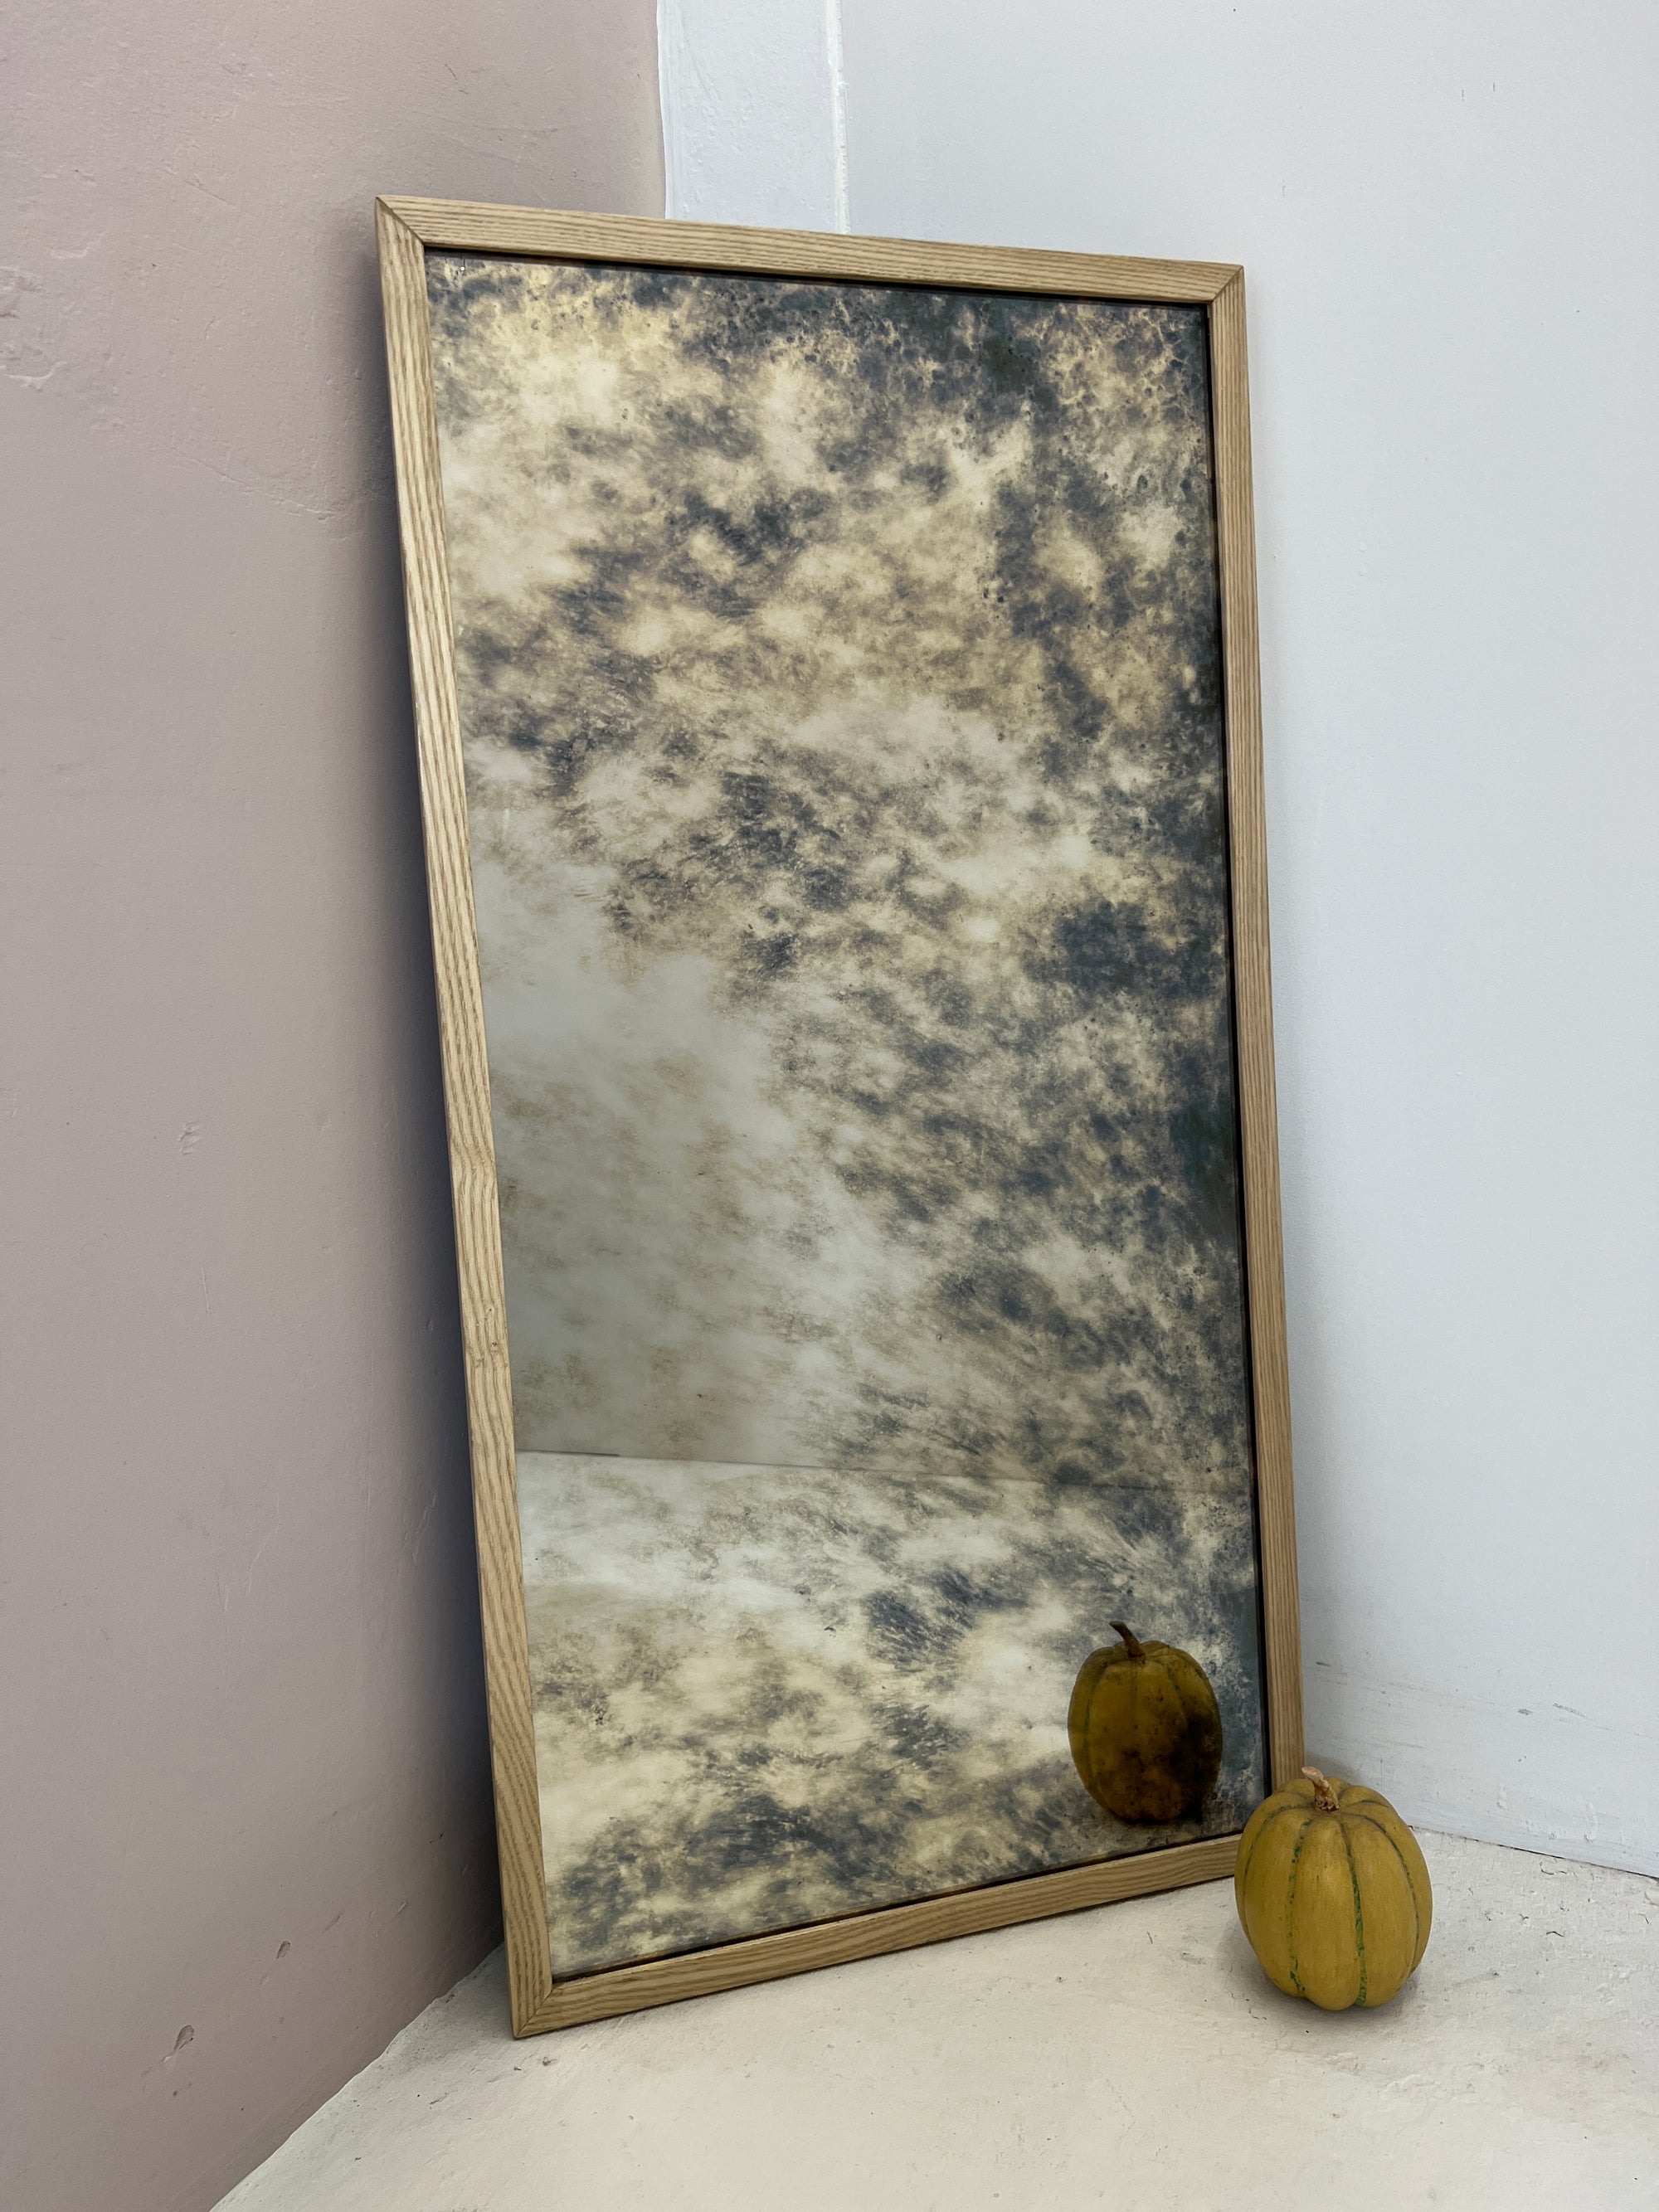 Oak framed antiqued mirror - 470 x 930mm